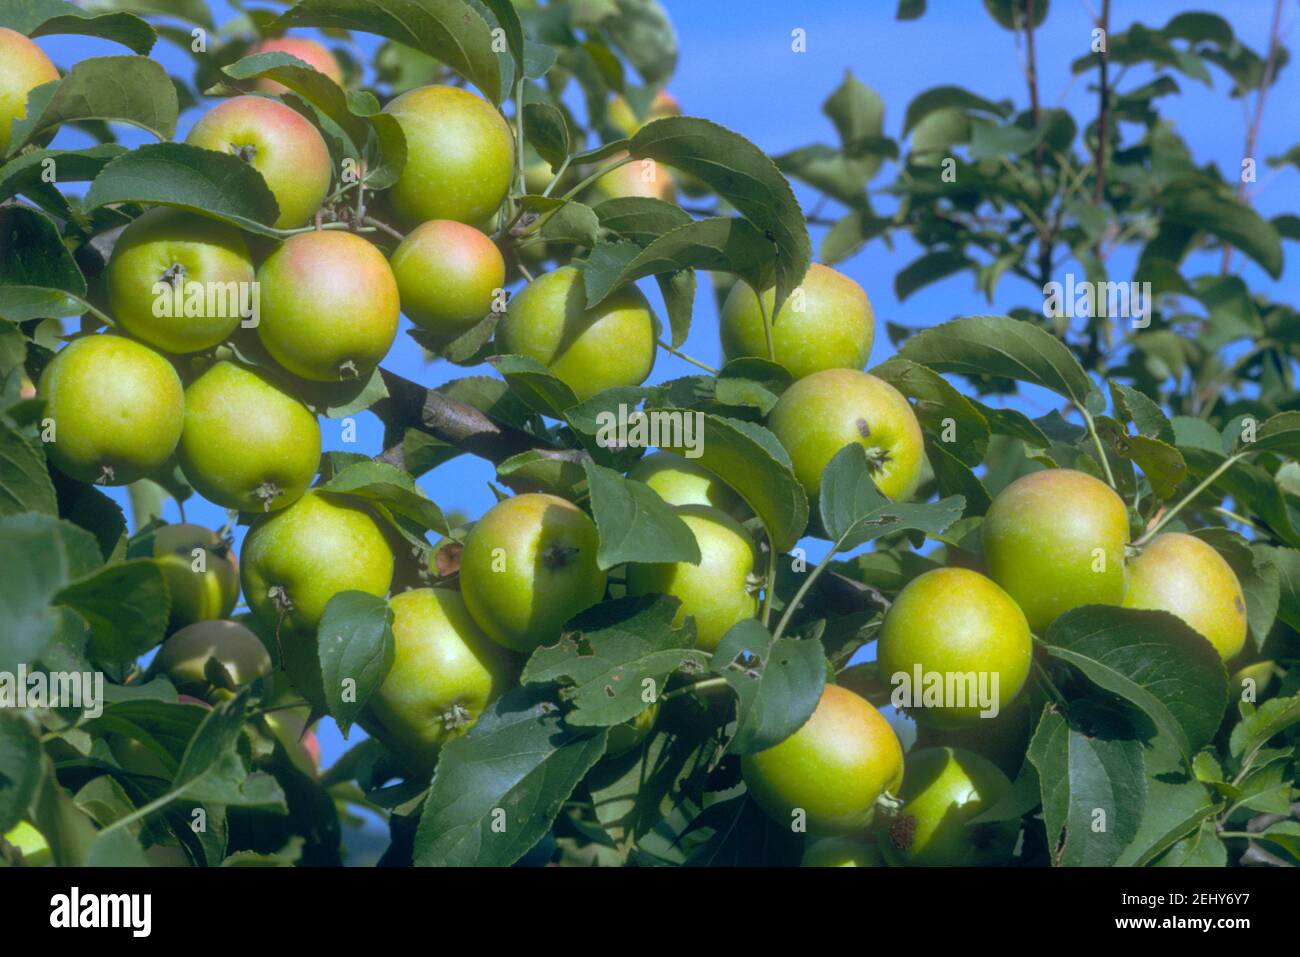 Apples on apple tree (Prunus malus) Stock Photo